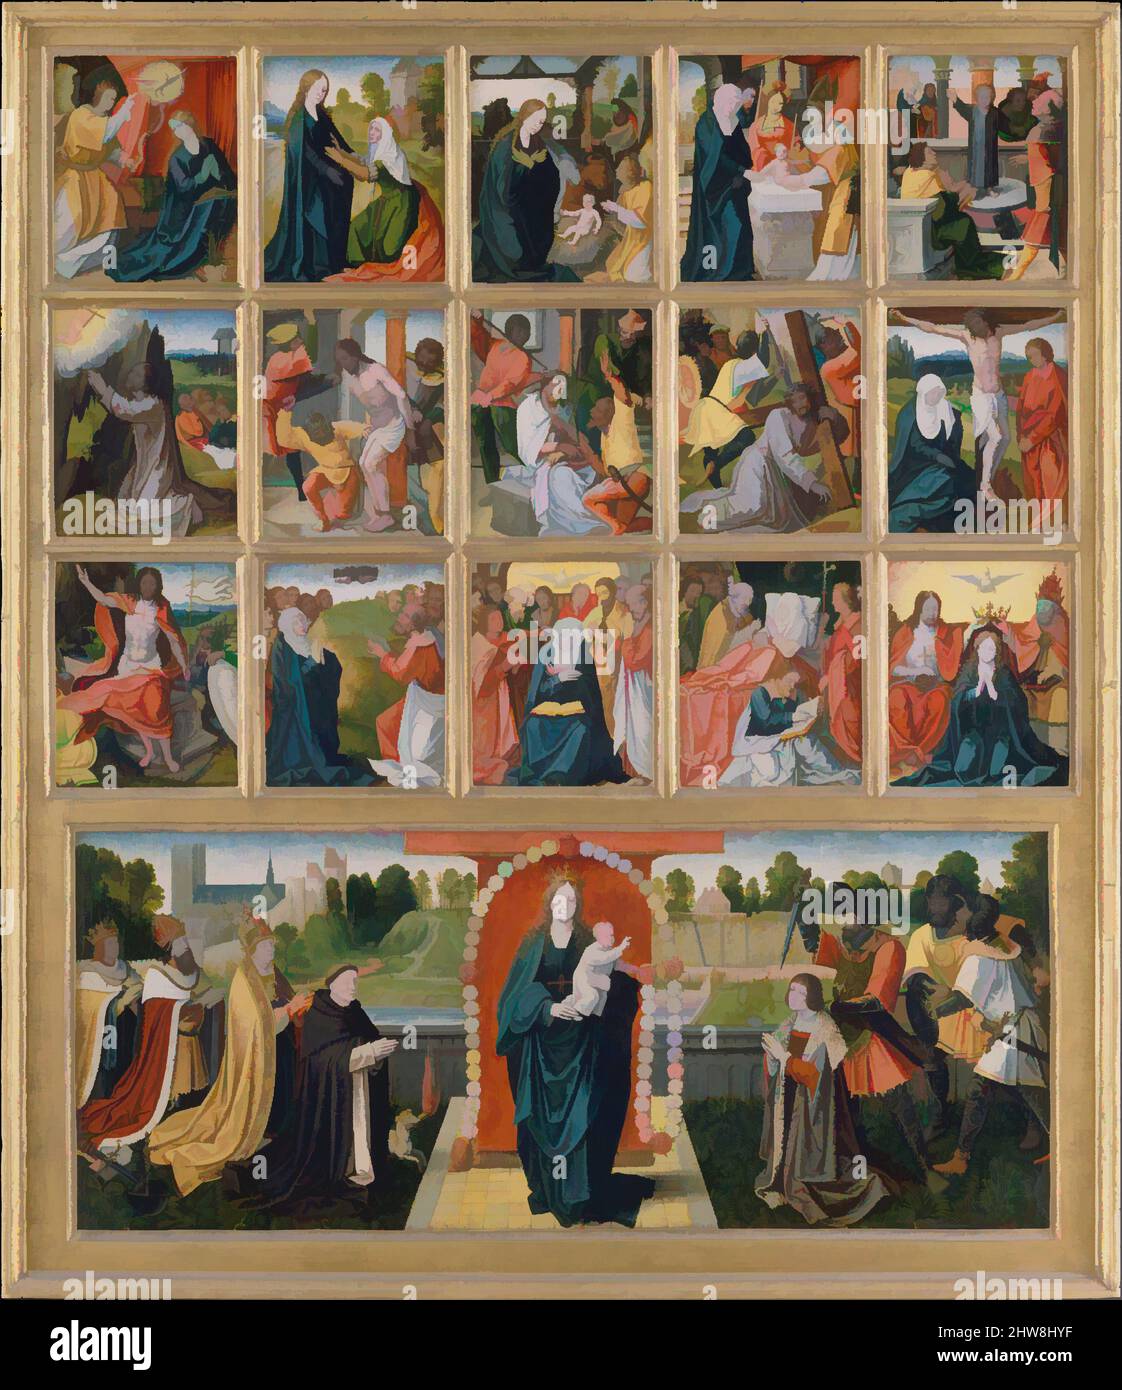 Art inspiré par les quinze mystères et la Vierge du Rosaire, huile sur bois, (a) 9 7/8 x 21 po. (25,1 x 53,3 cm) ; (b–p) chacun 5 x 4 1/8 po (12,7 x 10,5 cm), peintures, peintre néerlandais (éventuellement Goswijn van der Weyden, actif en 1491, mort après 1538), ca. 1515–20, cette œuvre classique modernisée par Artotop avec une touche de modernité. Formes, couleur et valeur, impact visuel accrocheur sur l'art émotions par la liberté d'œuvres d'art d'une manière contemporaine. Un message intemporel qui cherche une nouvelle direction créative. Artistes qui se tournent vers le support numérique et créent le NFT Artotop Banque D'Images